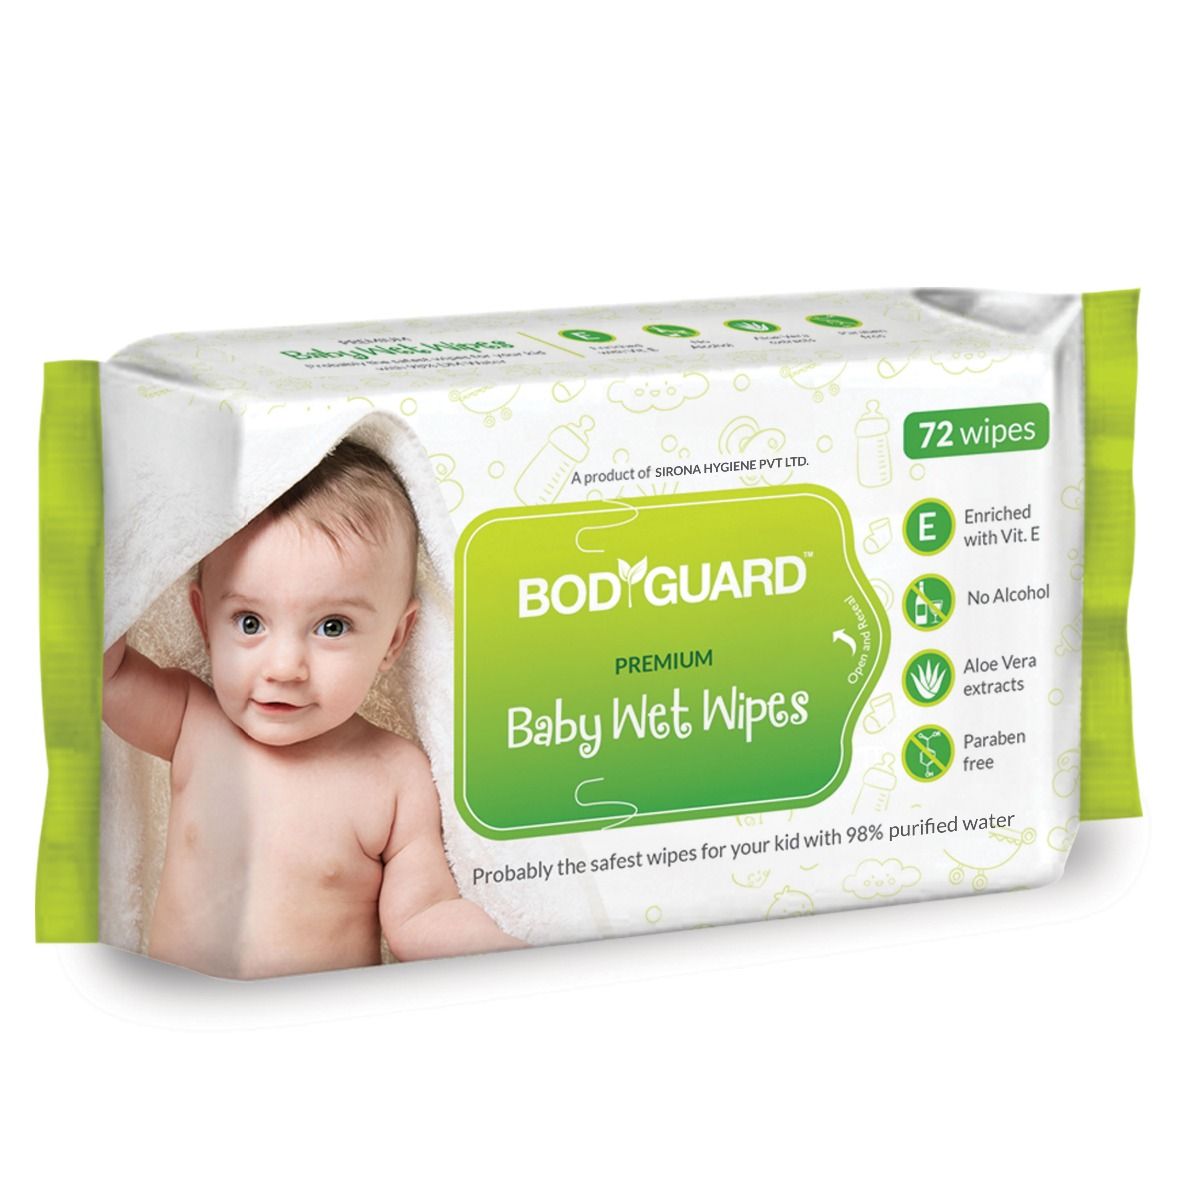 Buy BodyGuard Premium Baby Wet Wipes, 72 Count Online